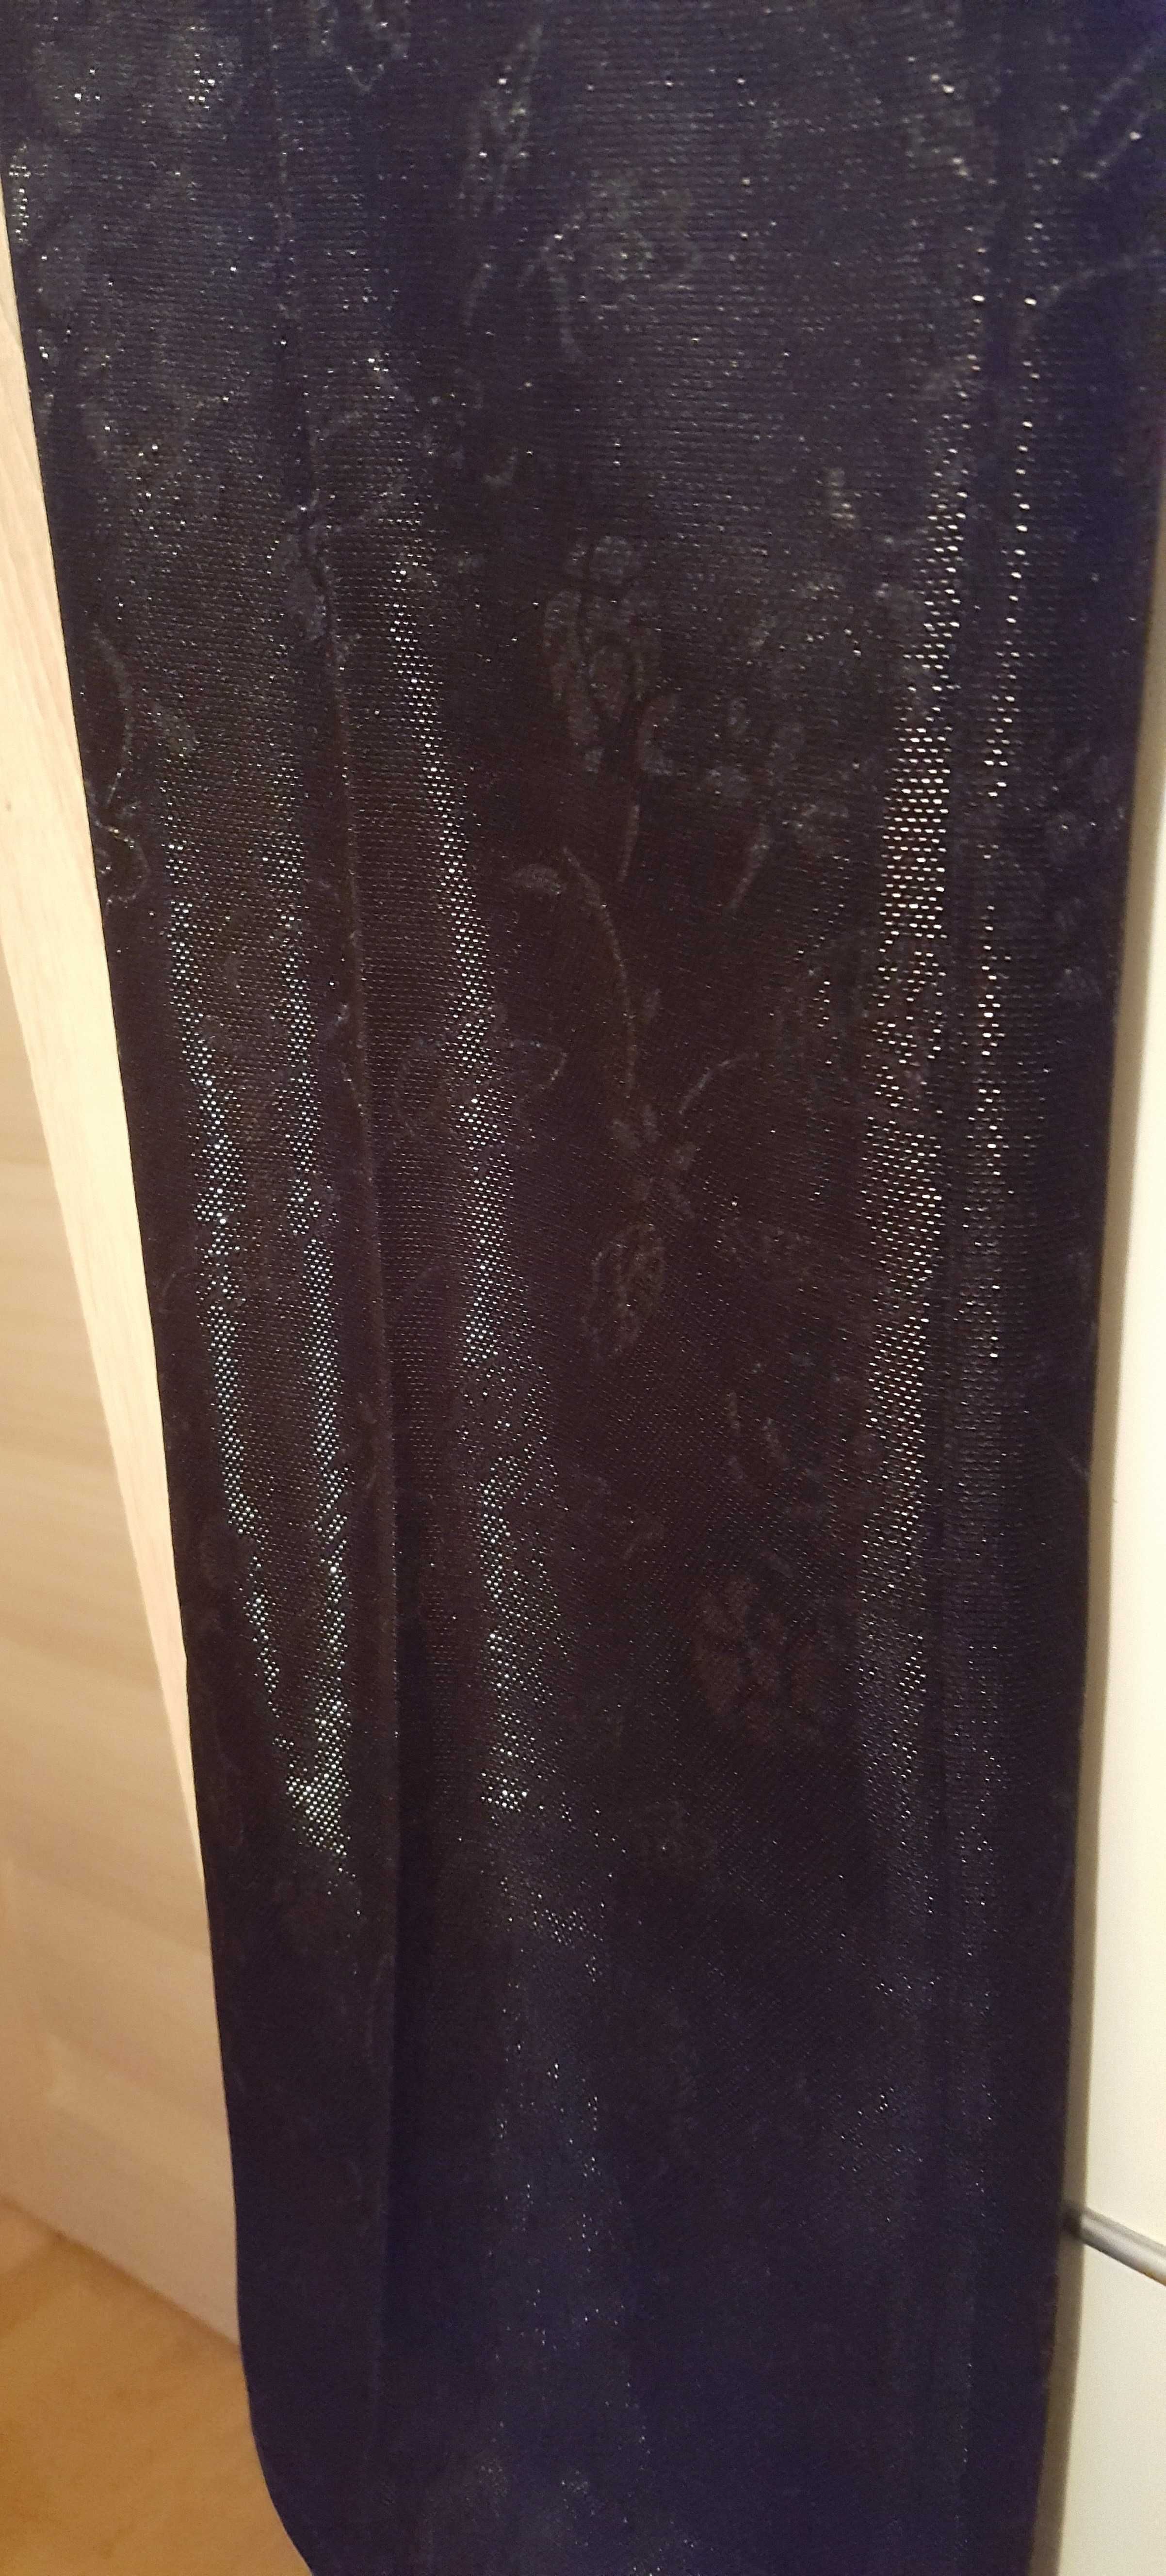 Pantaloni de dama negri, lucioși, cu model floral discret